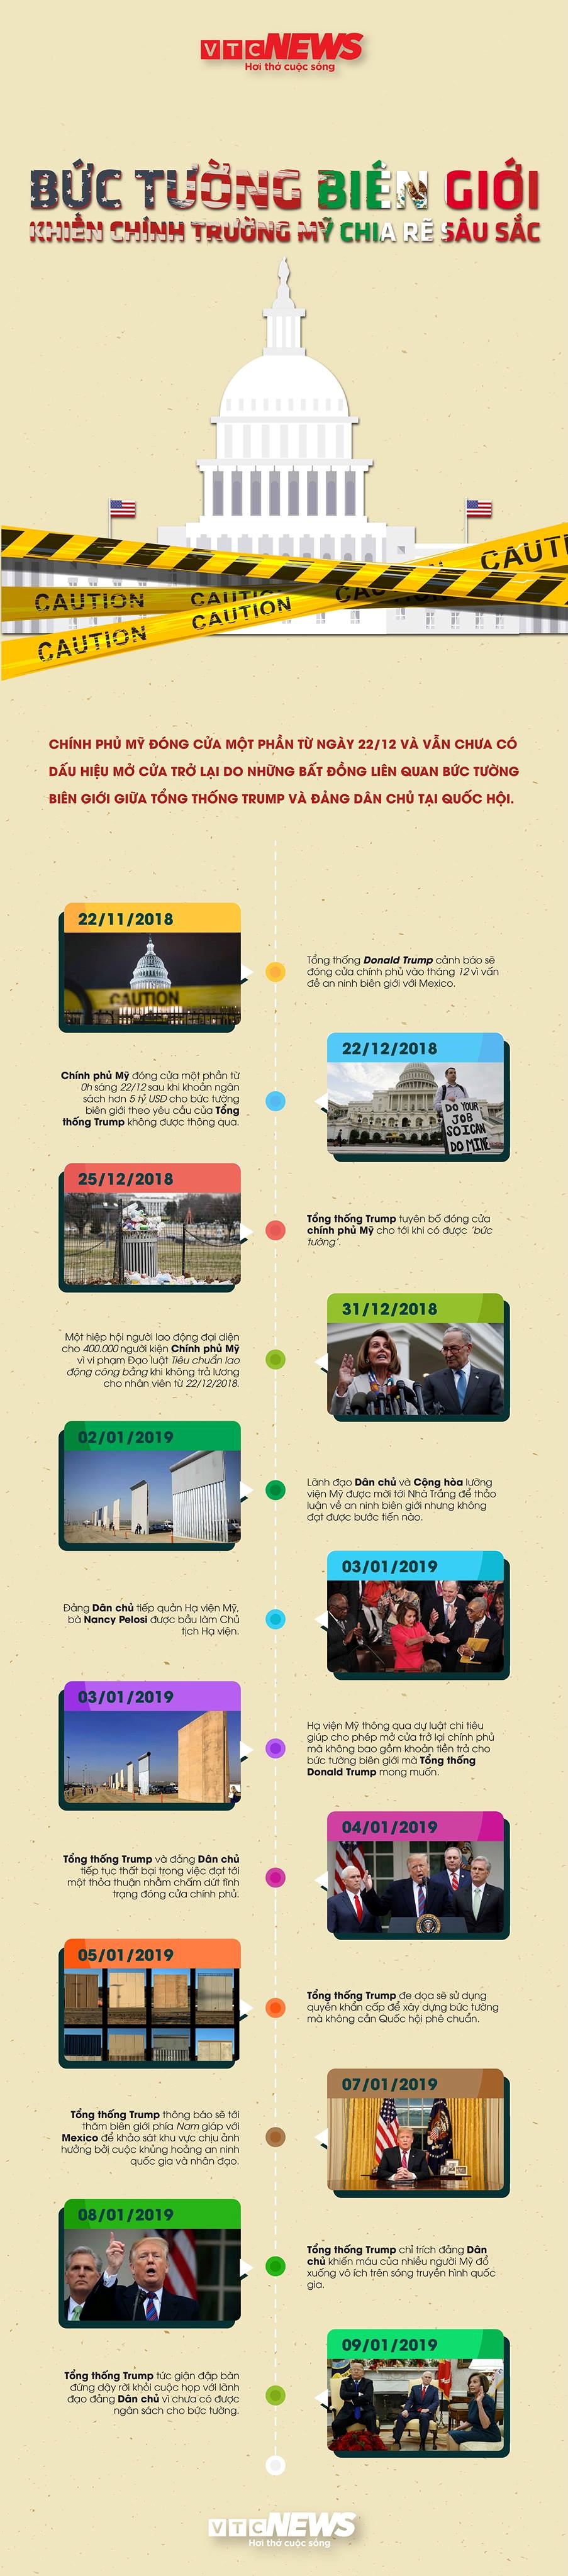 Infographic: Bức tường biên giới khiến chính trường Mỹ chia rẽ sâu sắc